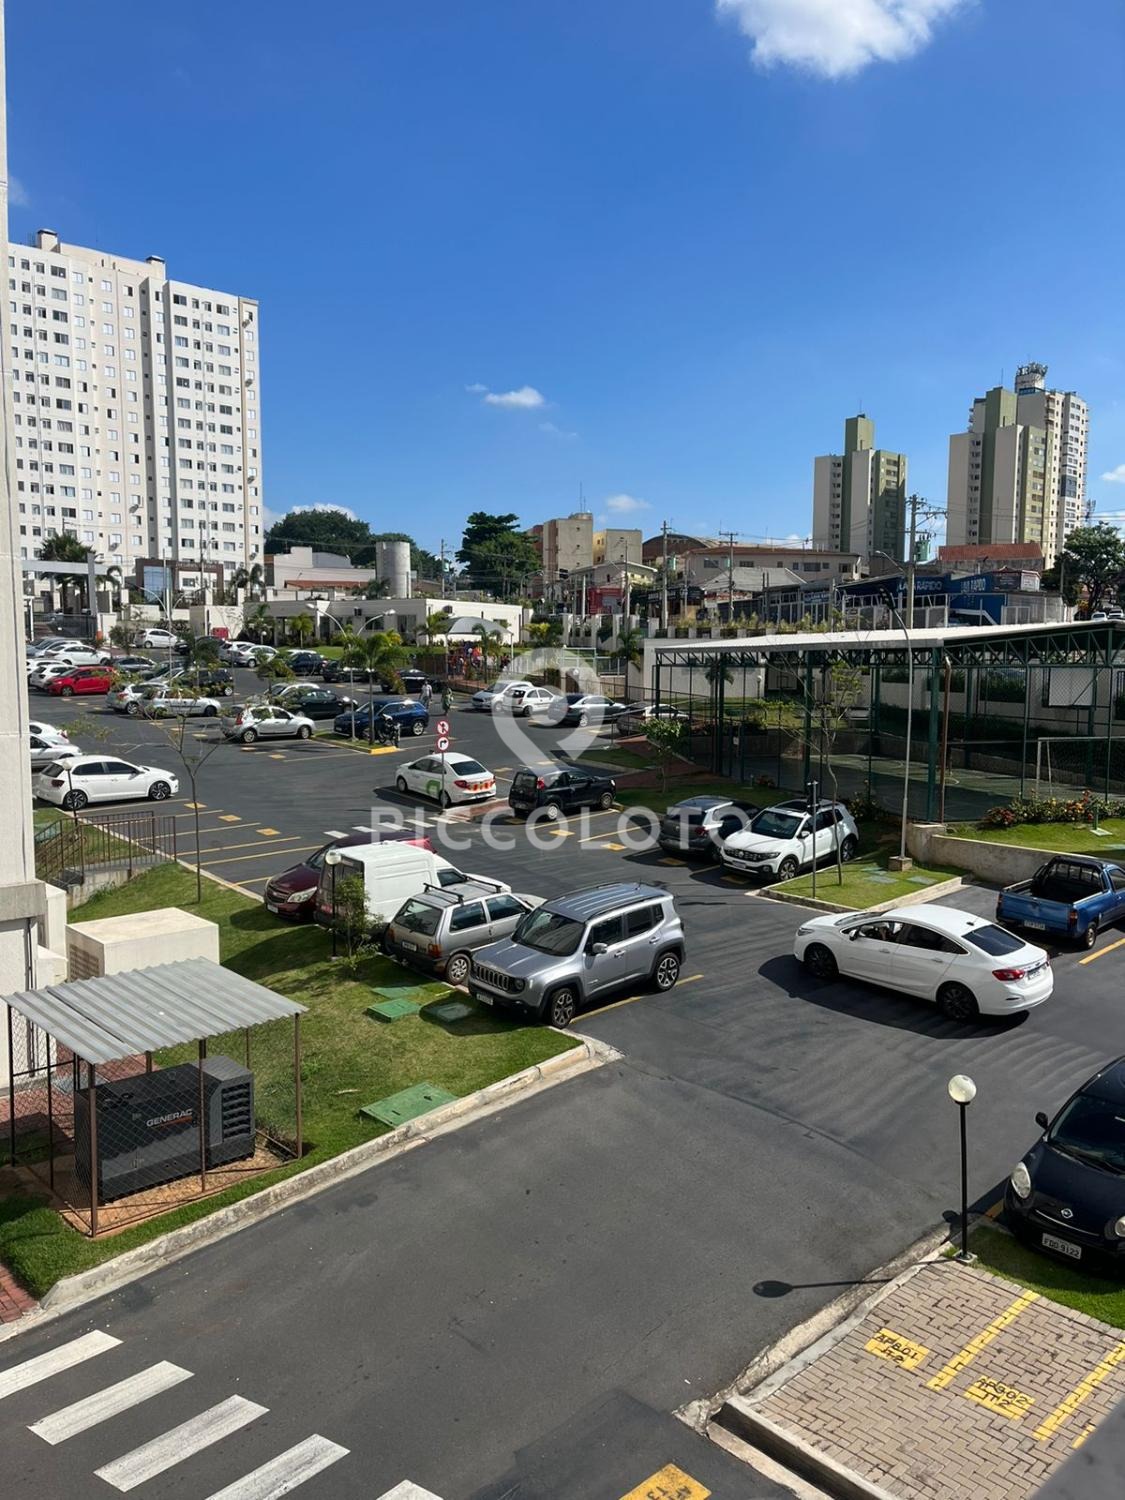 Piccoloto -Apartamento à venda no Vila São Bernardo em Campinas